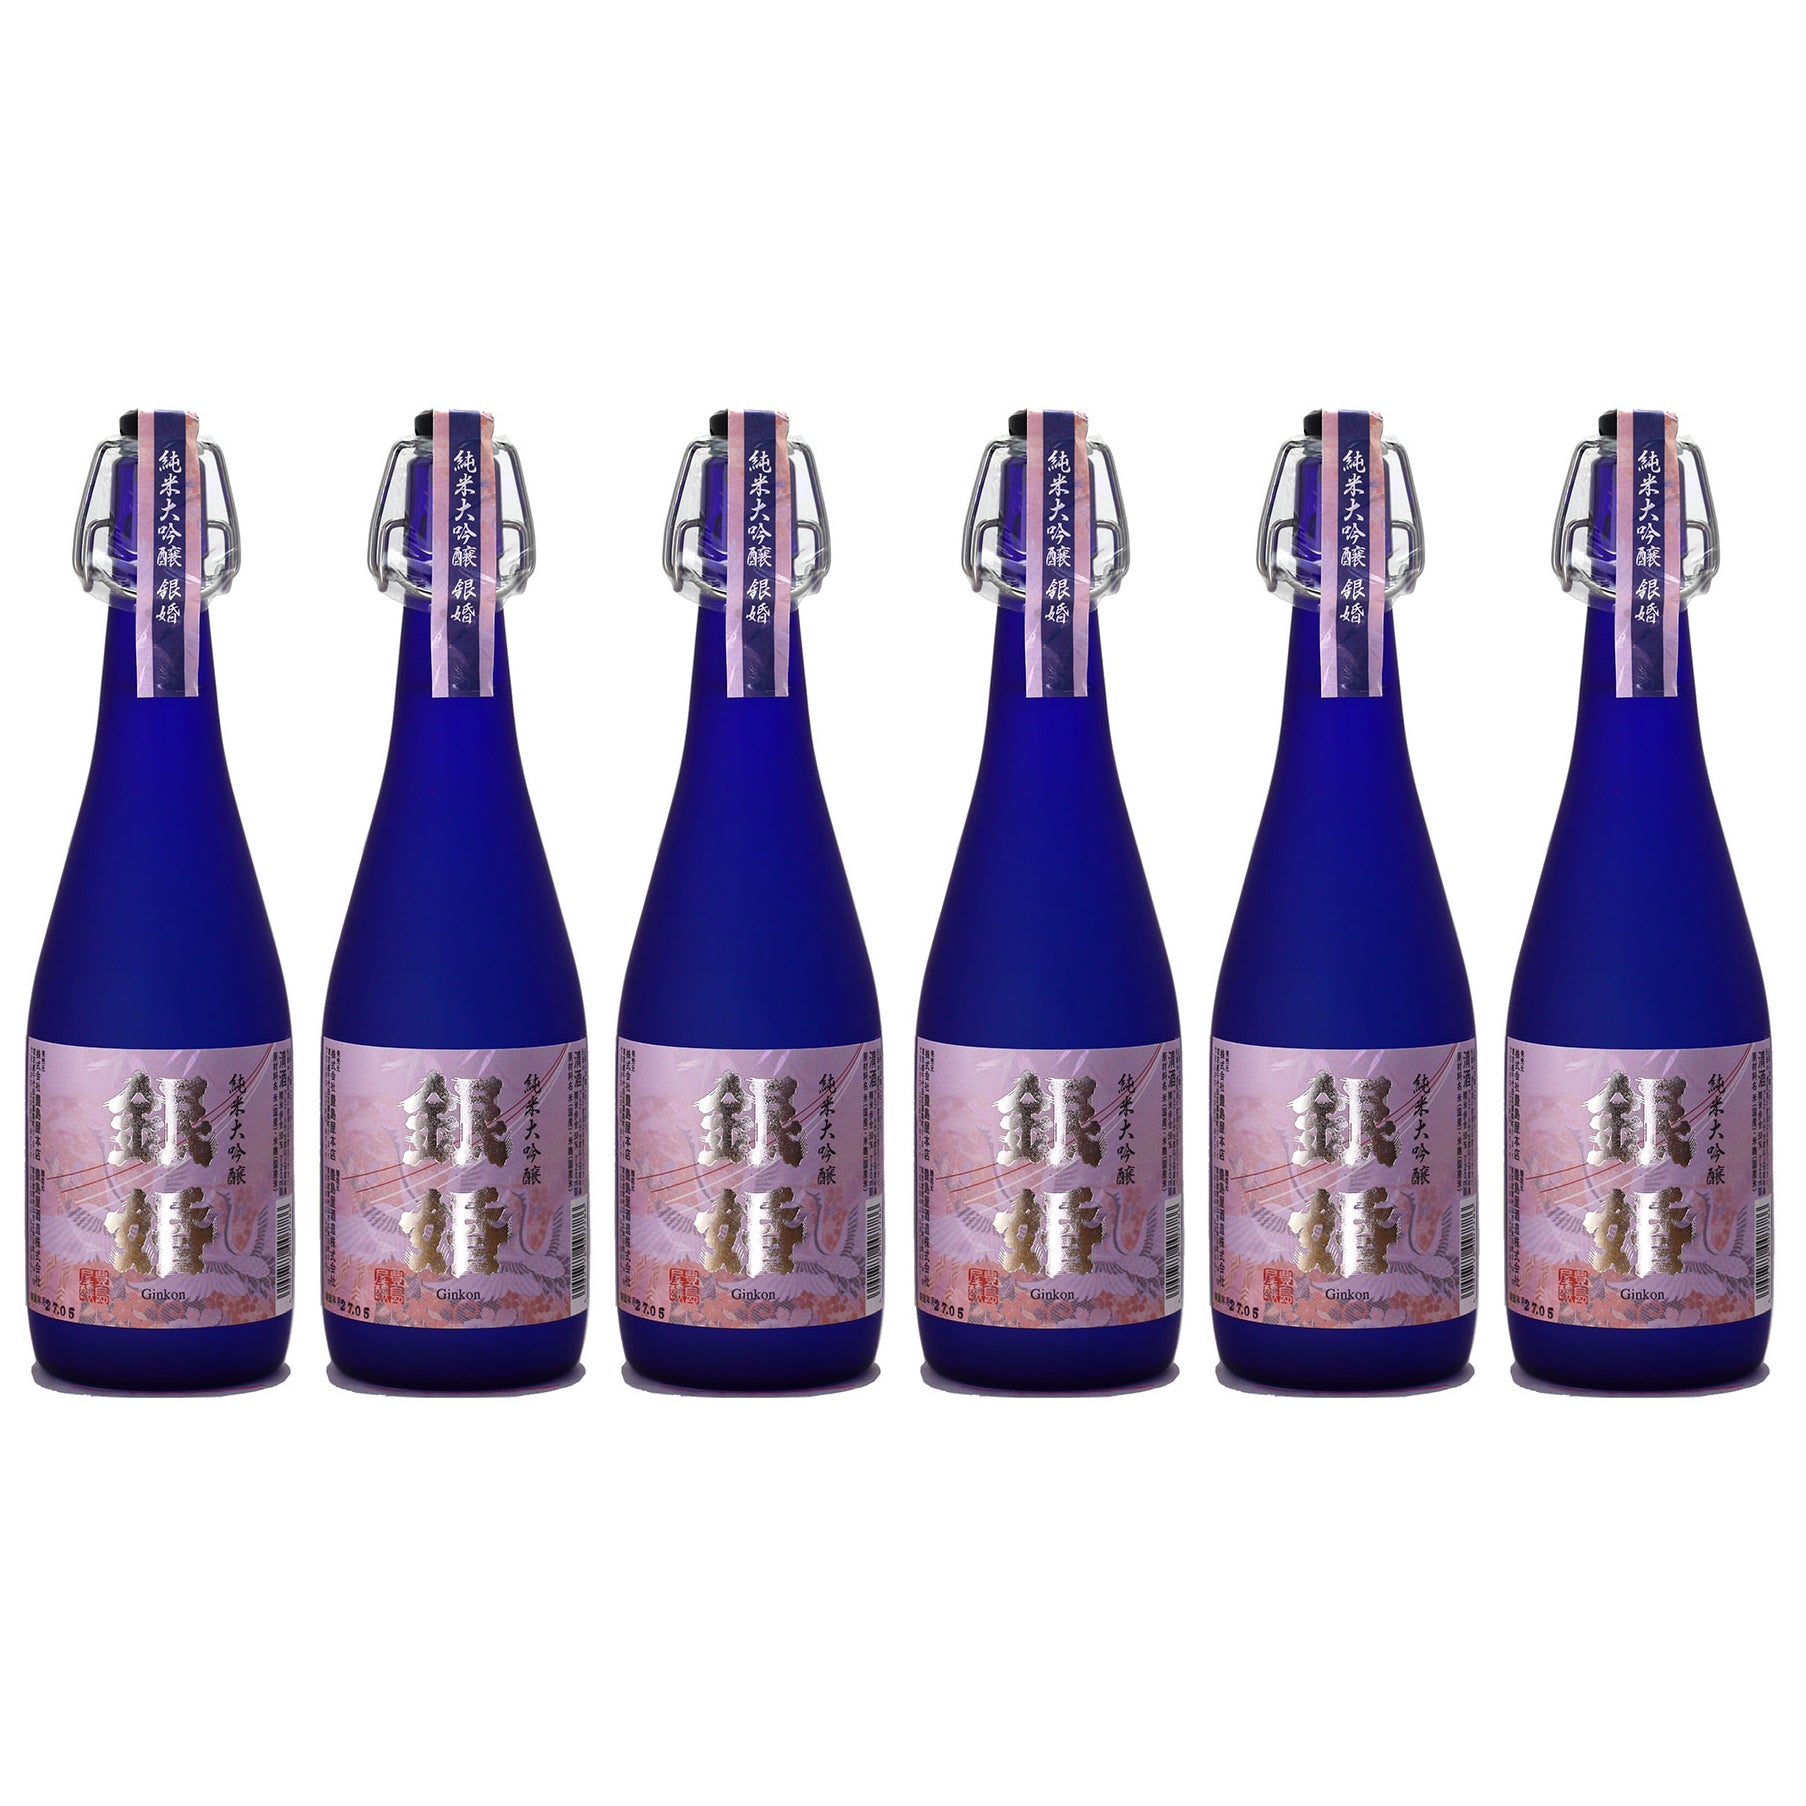 "Ginkon" (720ml) x 6 Bottle Pack